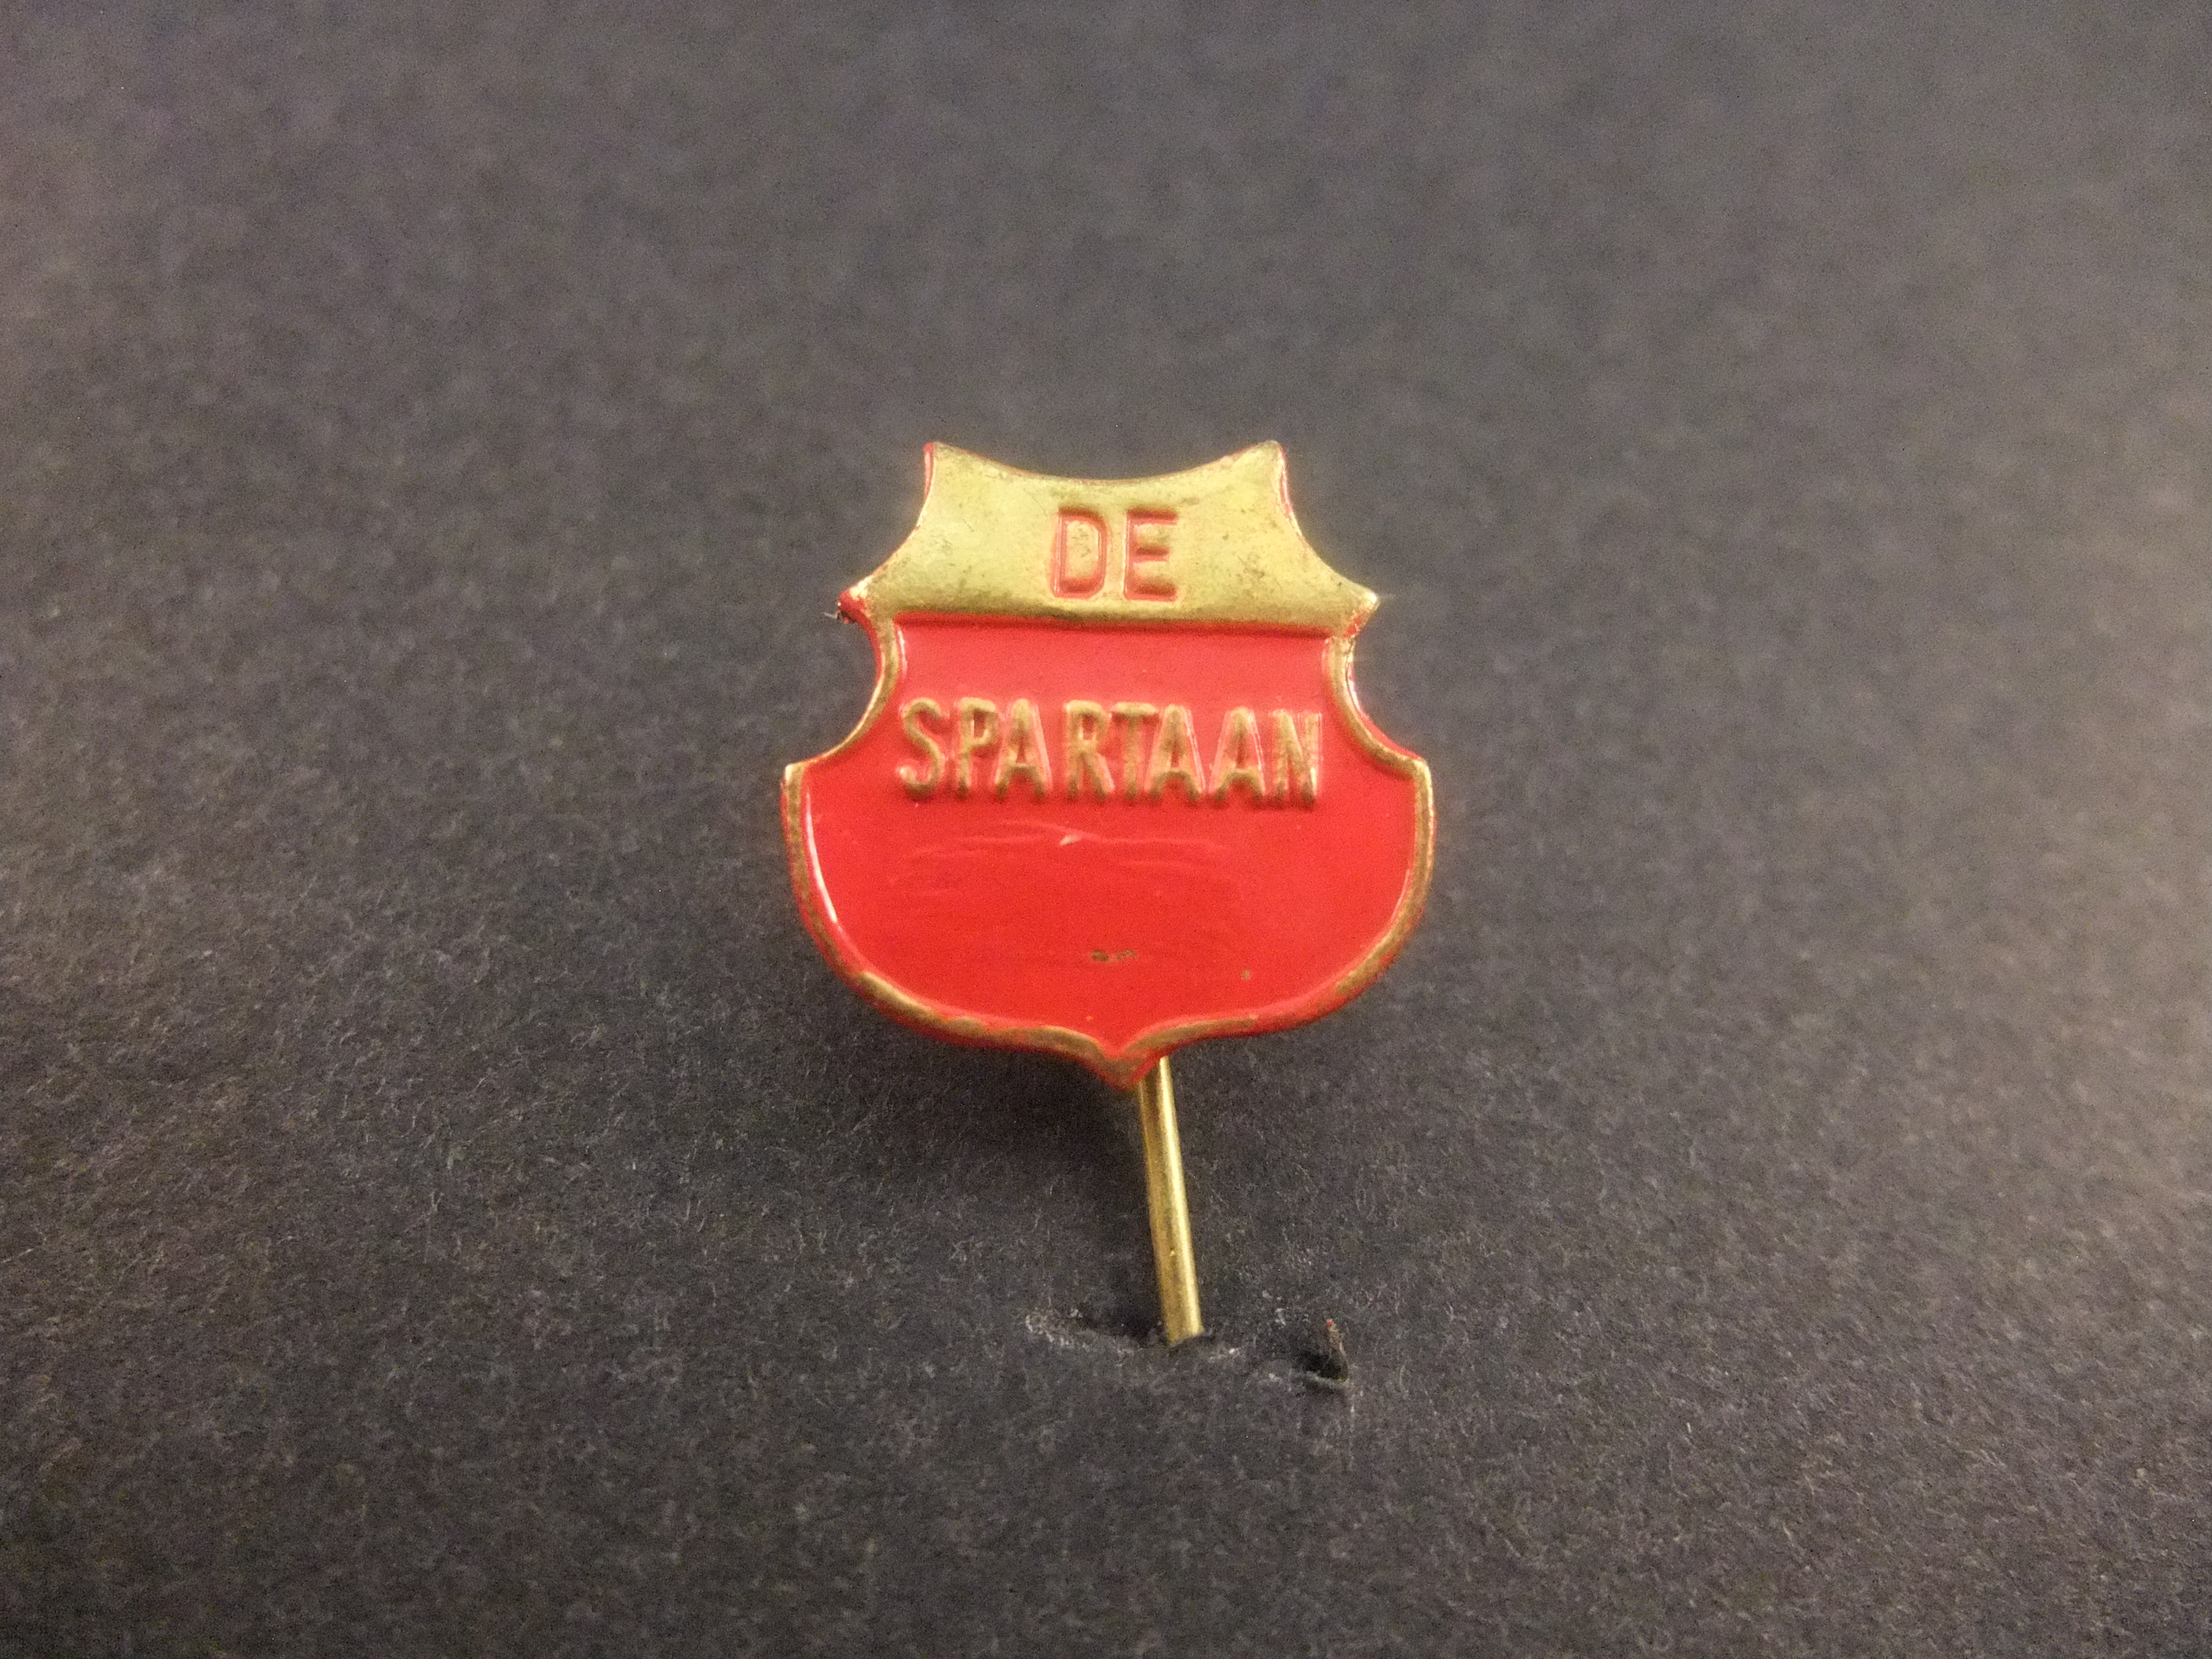 De Spartaan amateurvoetbalclub Amsterdam logo